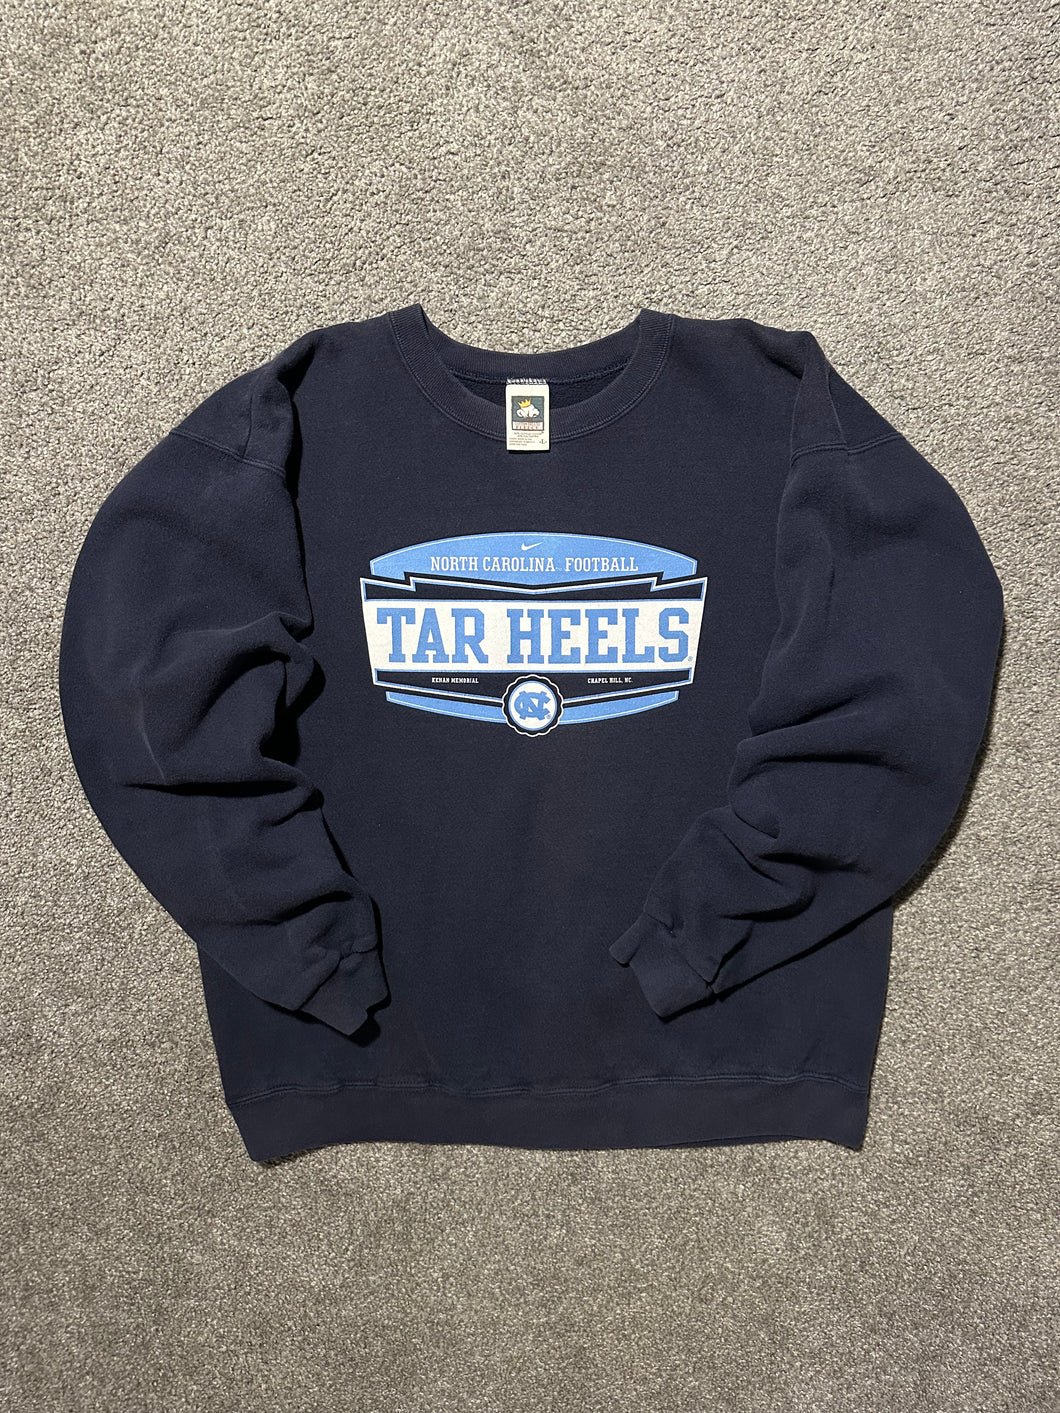 Vintage UNC Tar Heels Sweatshirt (Boxy Large)